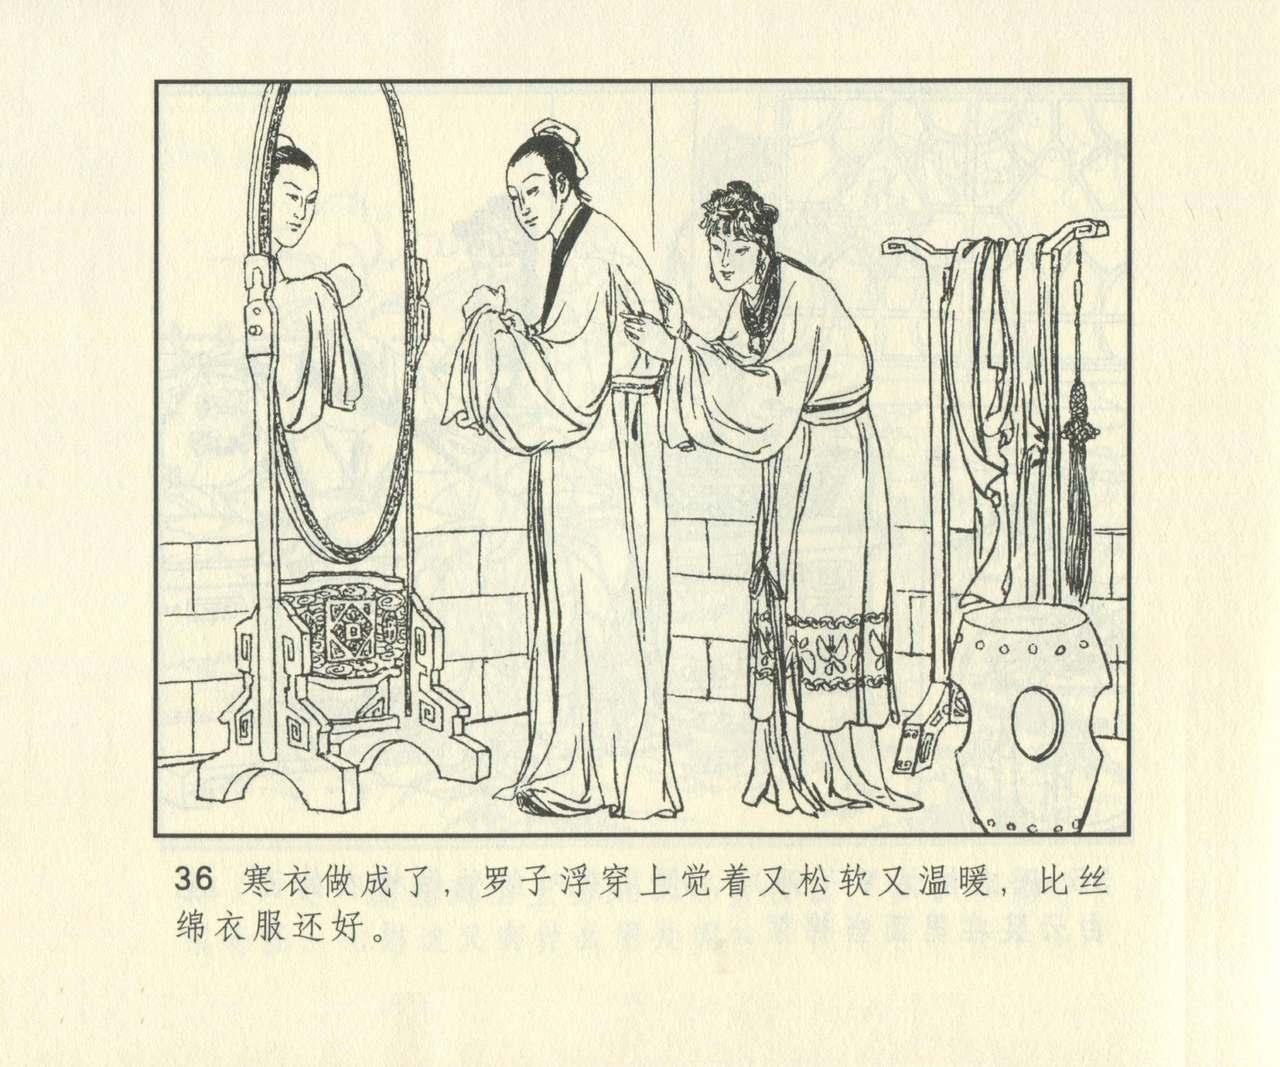 聊斋志异 张玮等绘 天津人民美术出版社 卷二十一 ~ 三十 652